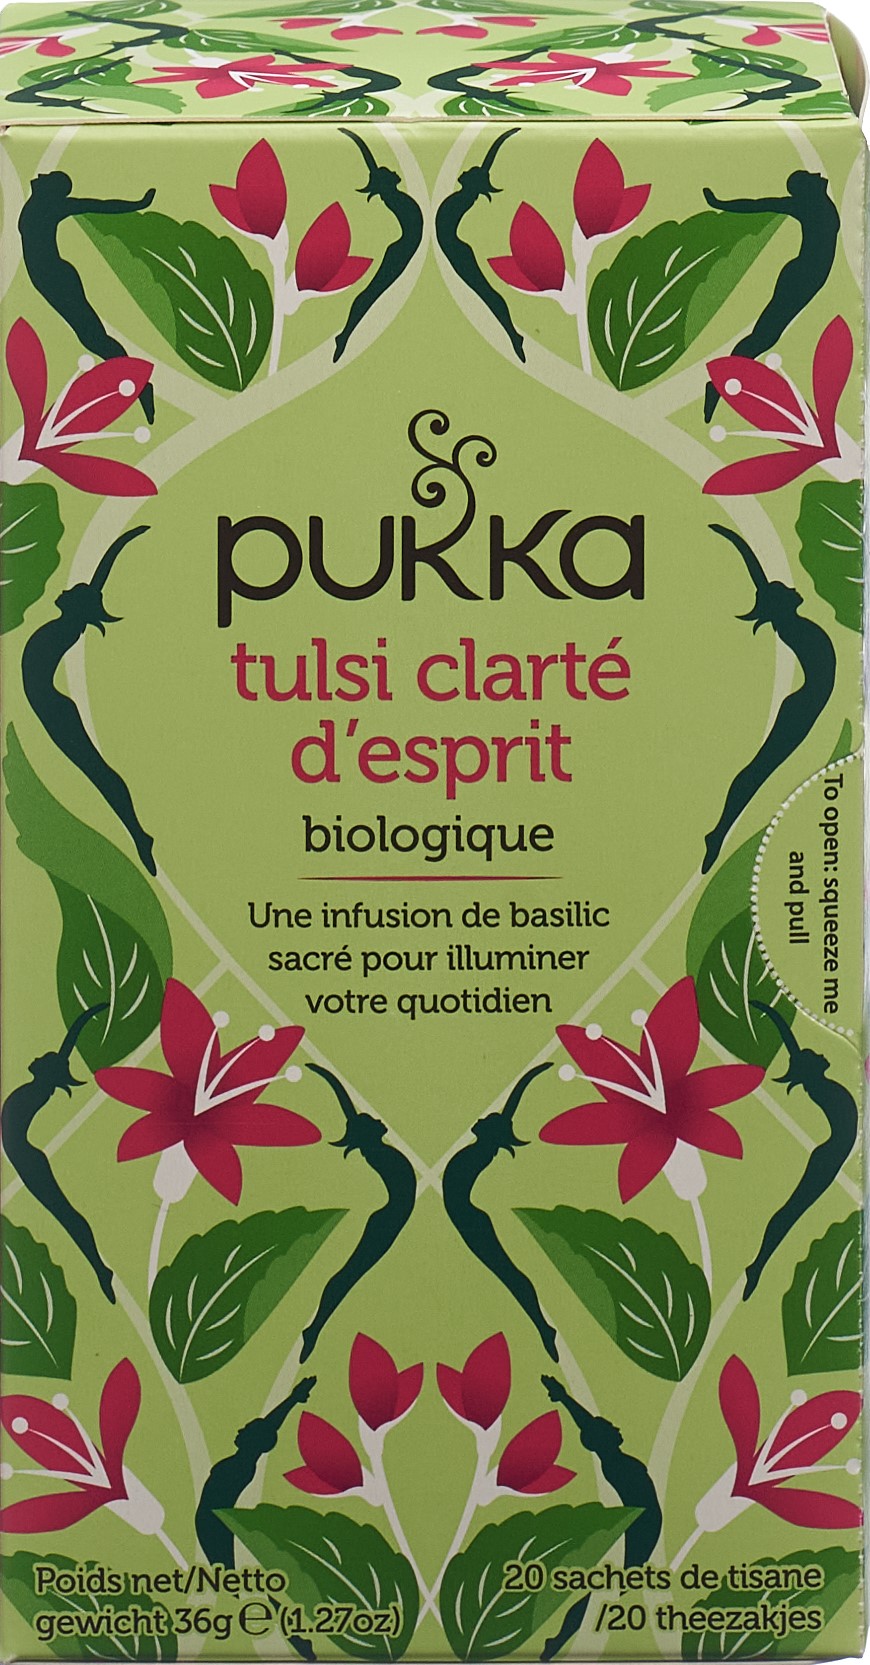 Infusion bio Pukka Tulsi Clarté d'Esprit - Pukka herbs